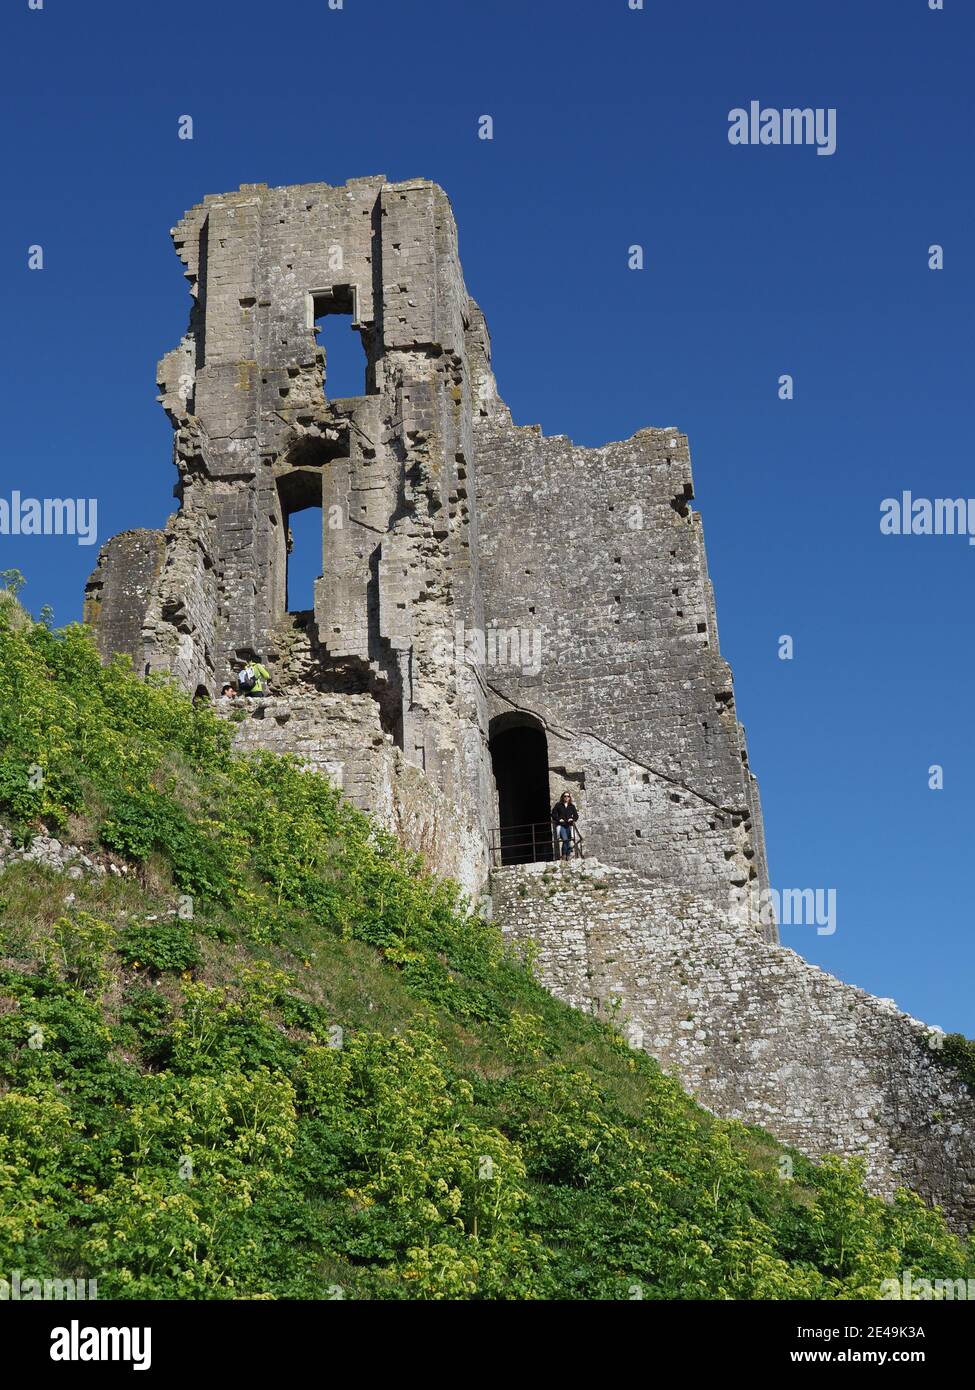 Corfe Castle ha rovinato il castello nella zona di Purbecks del Dorset in Inghilterra, regno unito Foto Stock